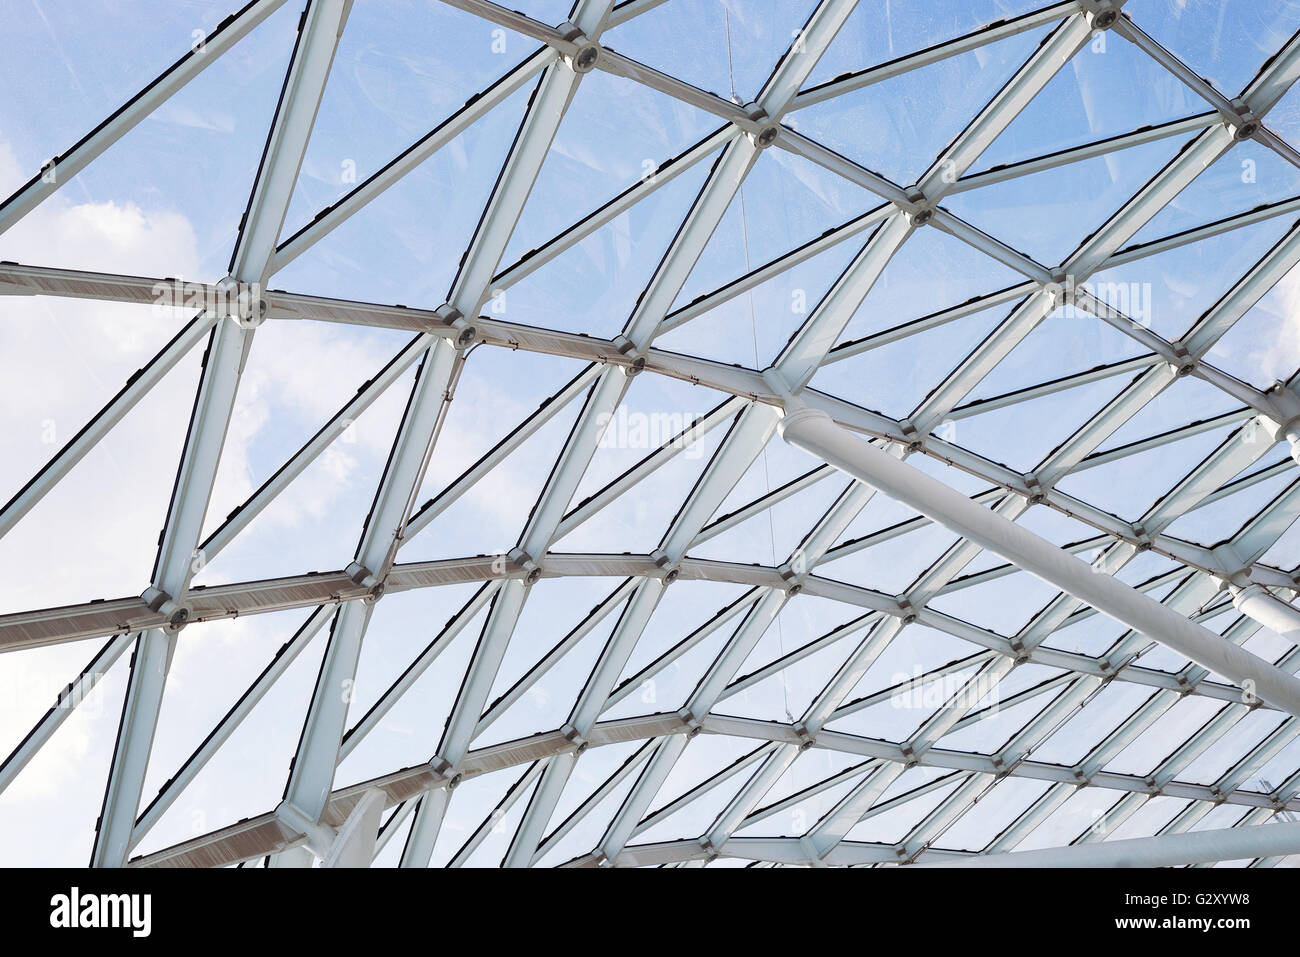 Stahl-Glas Dach Decke Wand Bau Sichtfenster mit Support-system  Stockfotografie - Alamy